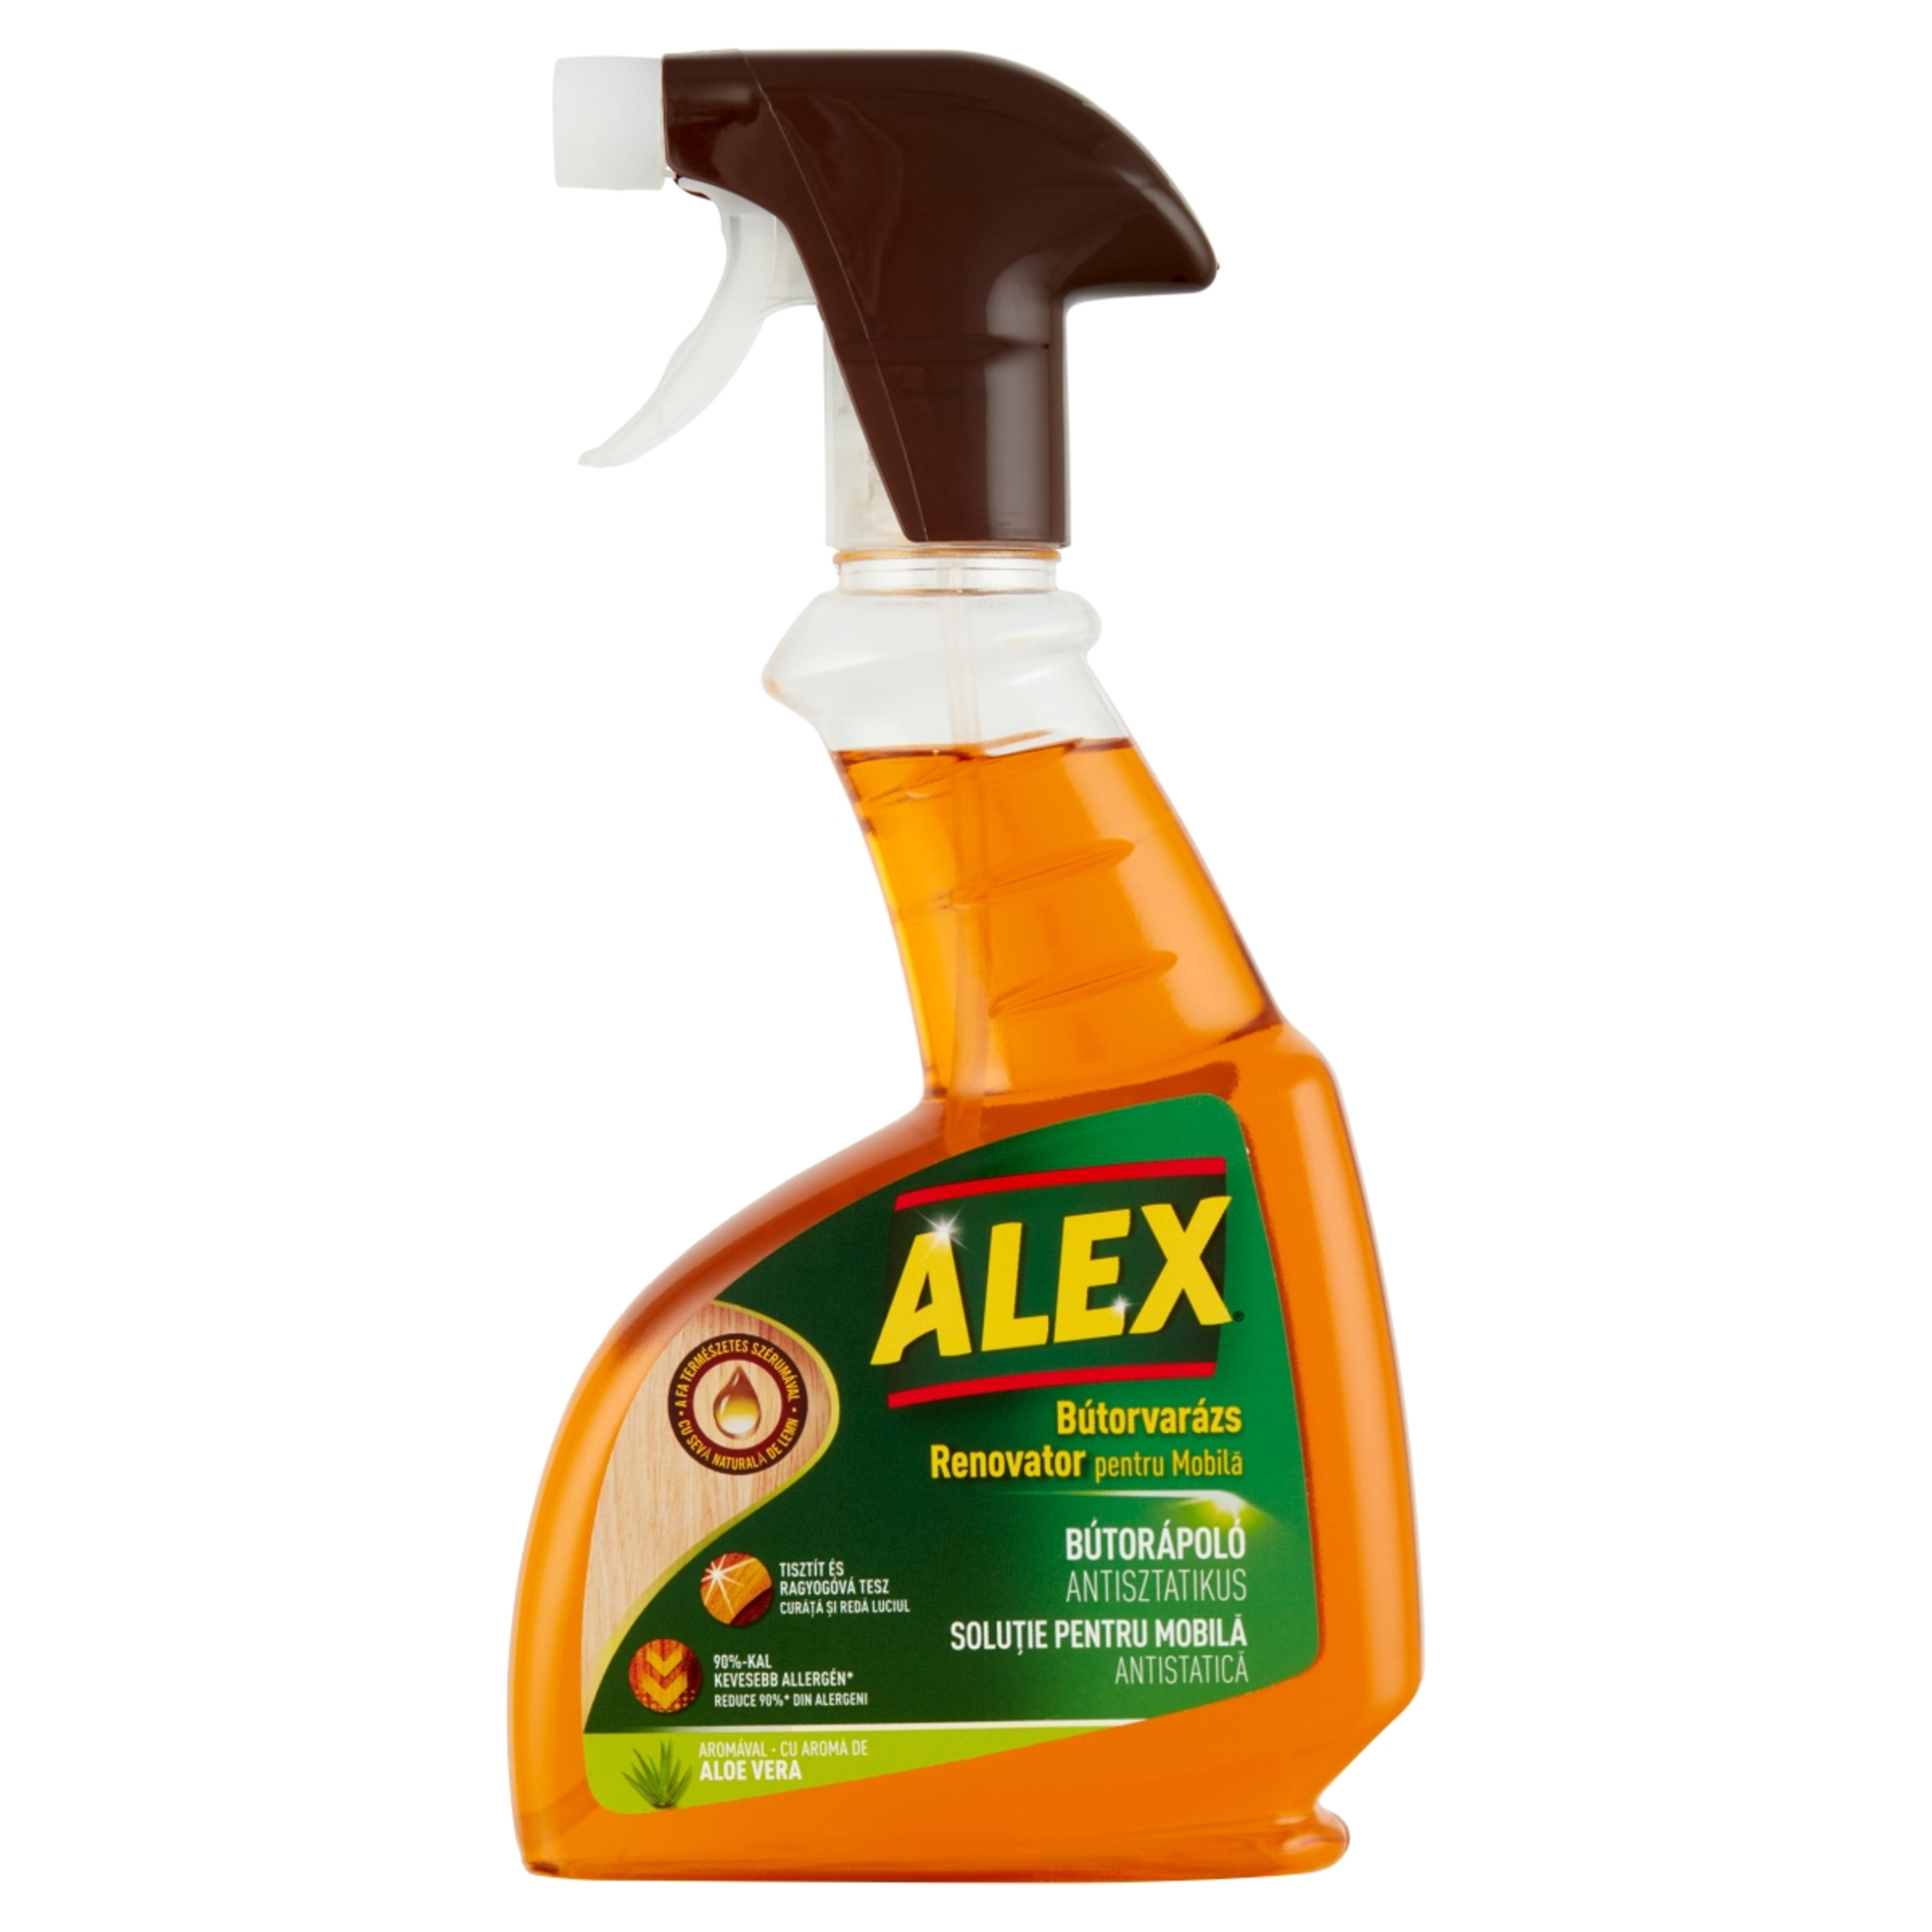 Alex Aloe Vera, Antisztatikus Bútorápoló - 375 ml